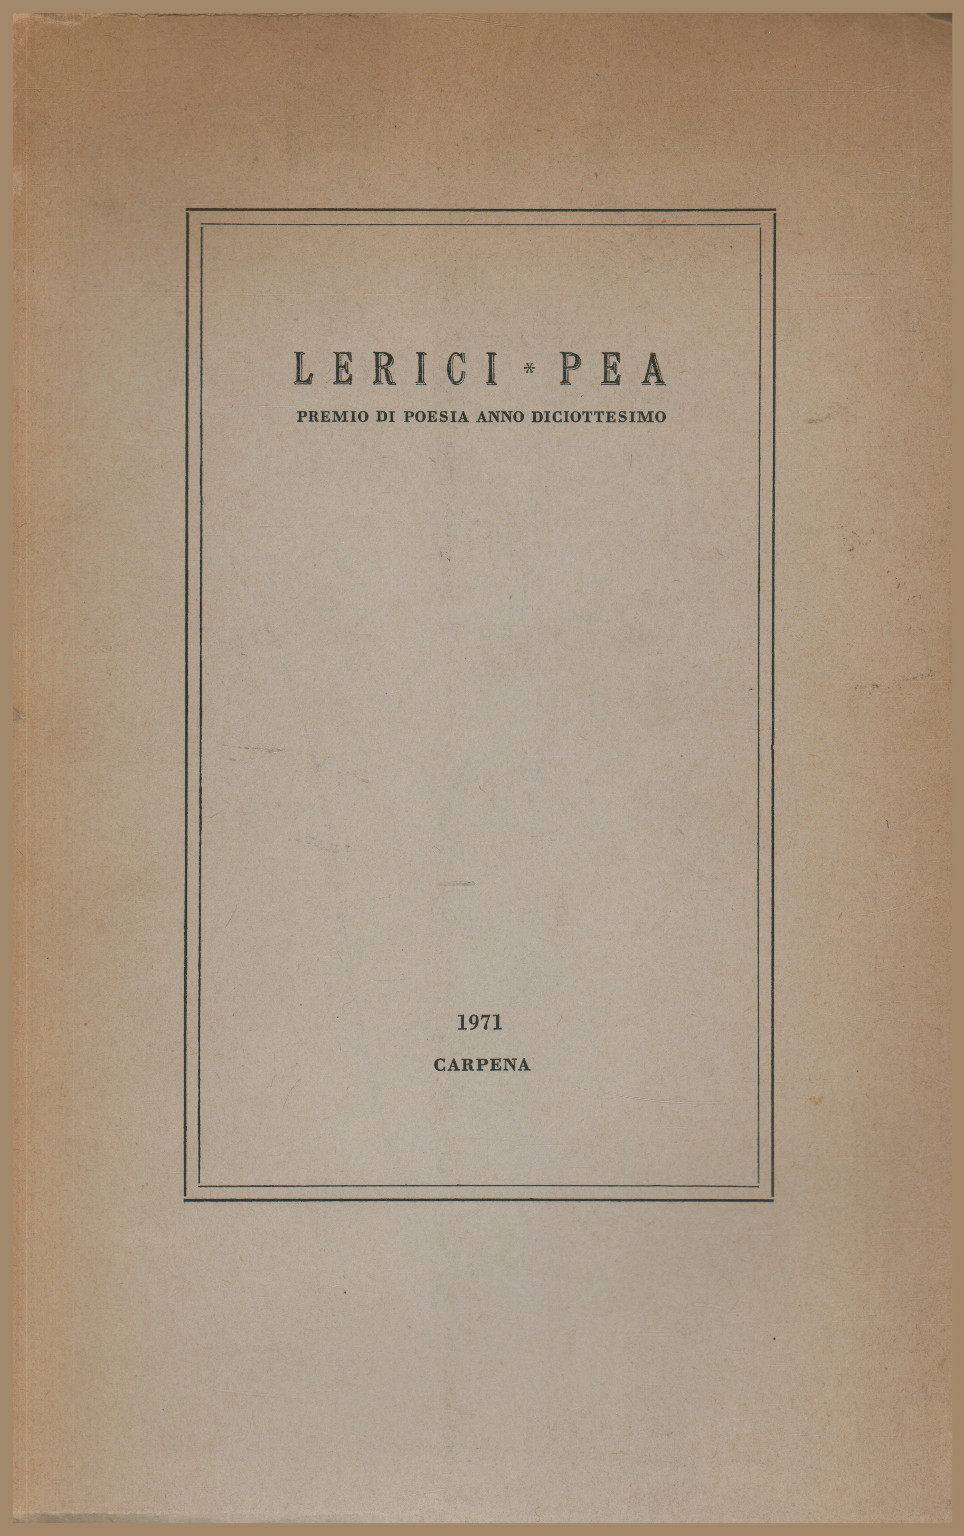 Lerici - guisante. Premio de poesía decimoctavo año, AA.VV.